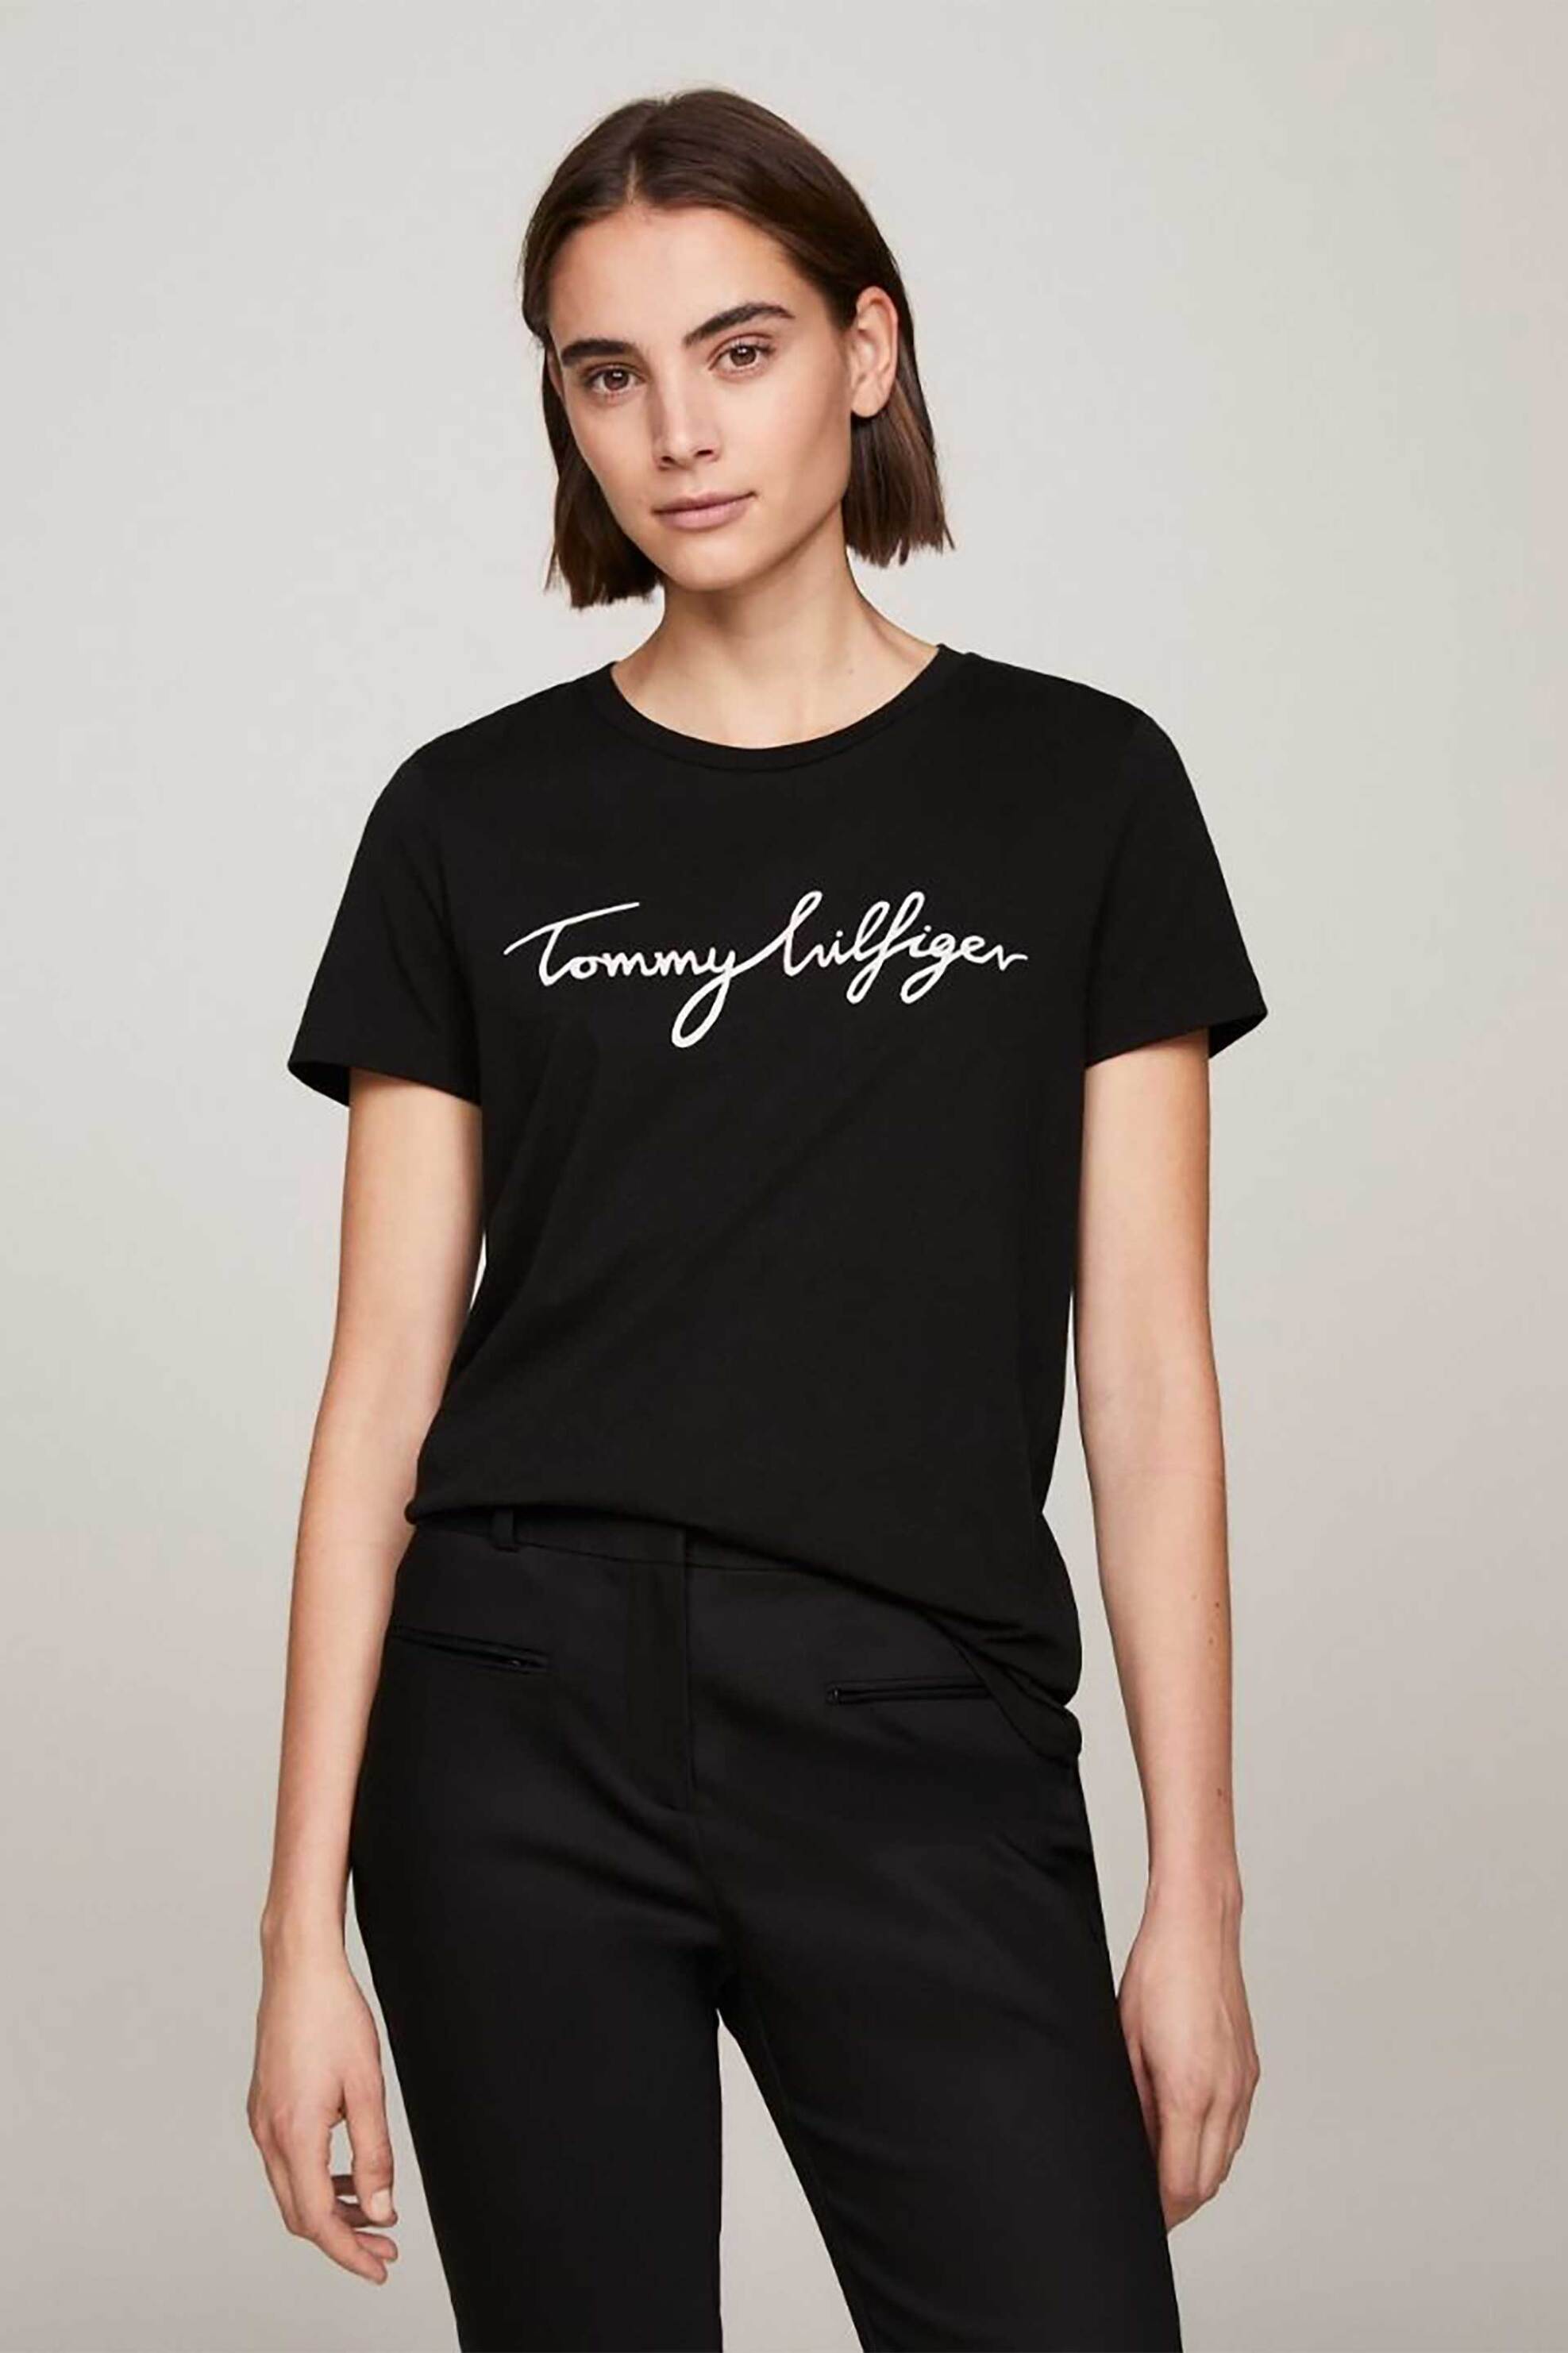 Γυναίκα > ΡΟΥΧΑ > Tops > T-Shirts Tommy Hilfiger γυναικείο βαμβακερό T-shirt μονόχρωμο με contrast logo print - WW0WW24967 Μαύρο